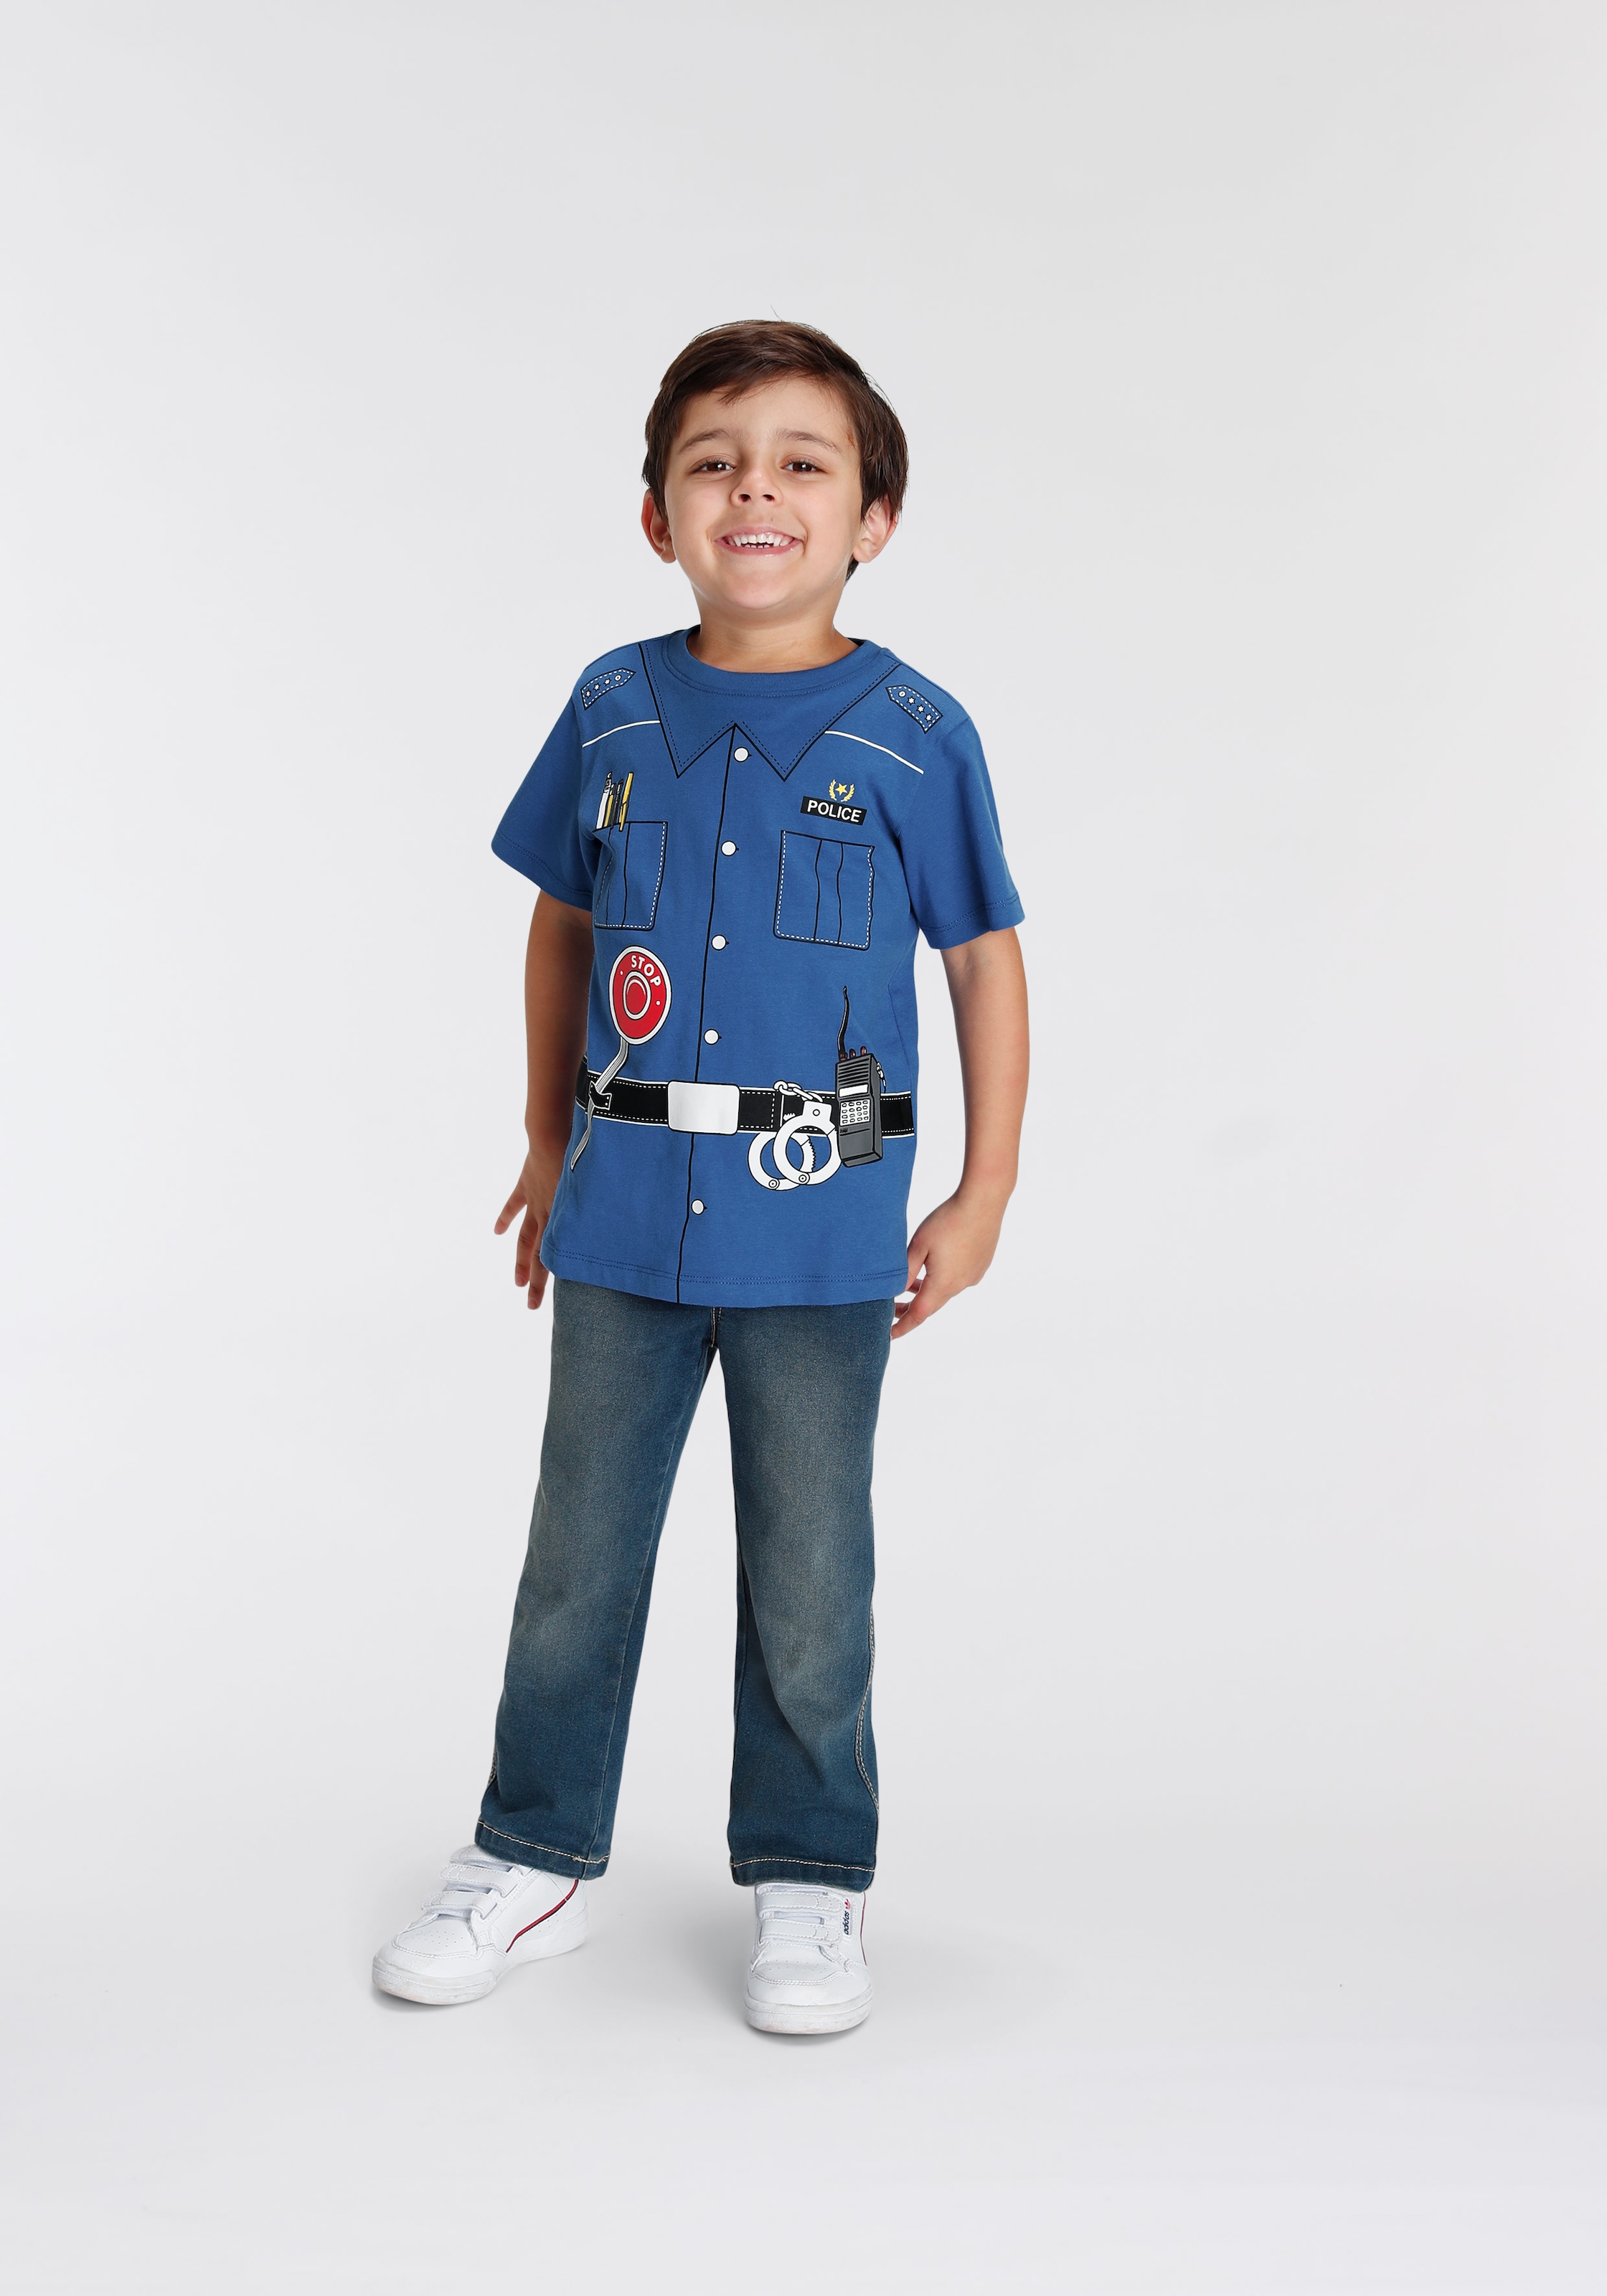 T-Shirt Druck Online OTTO Shop »POLIZEI«, im KIDSWORLD Uniform